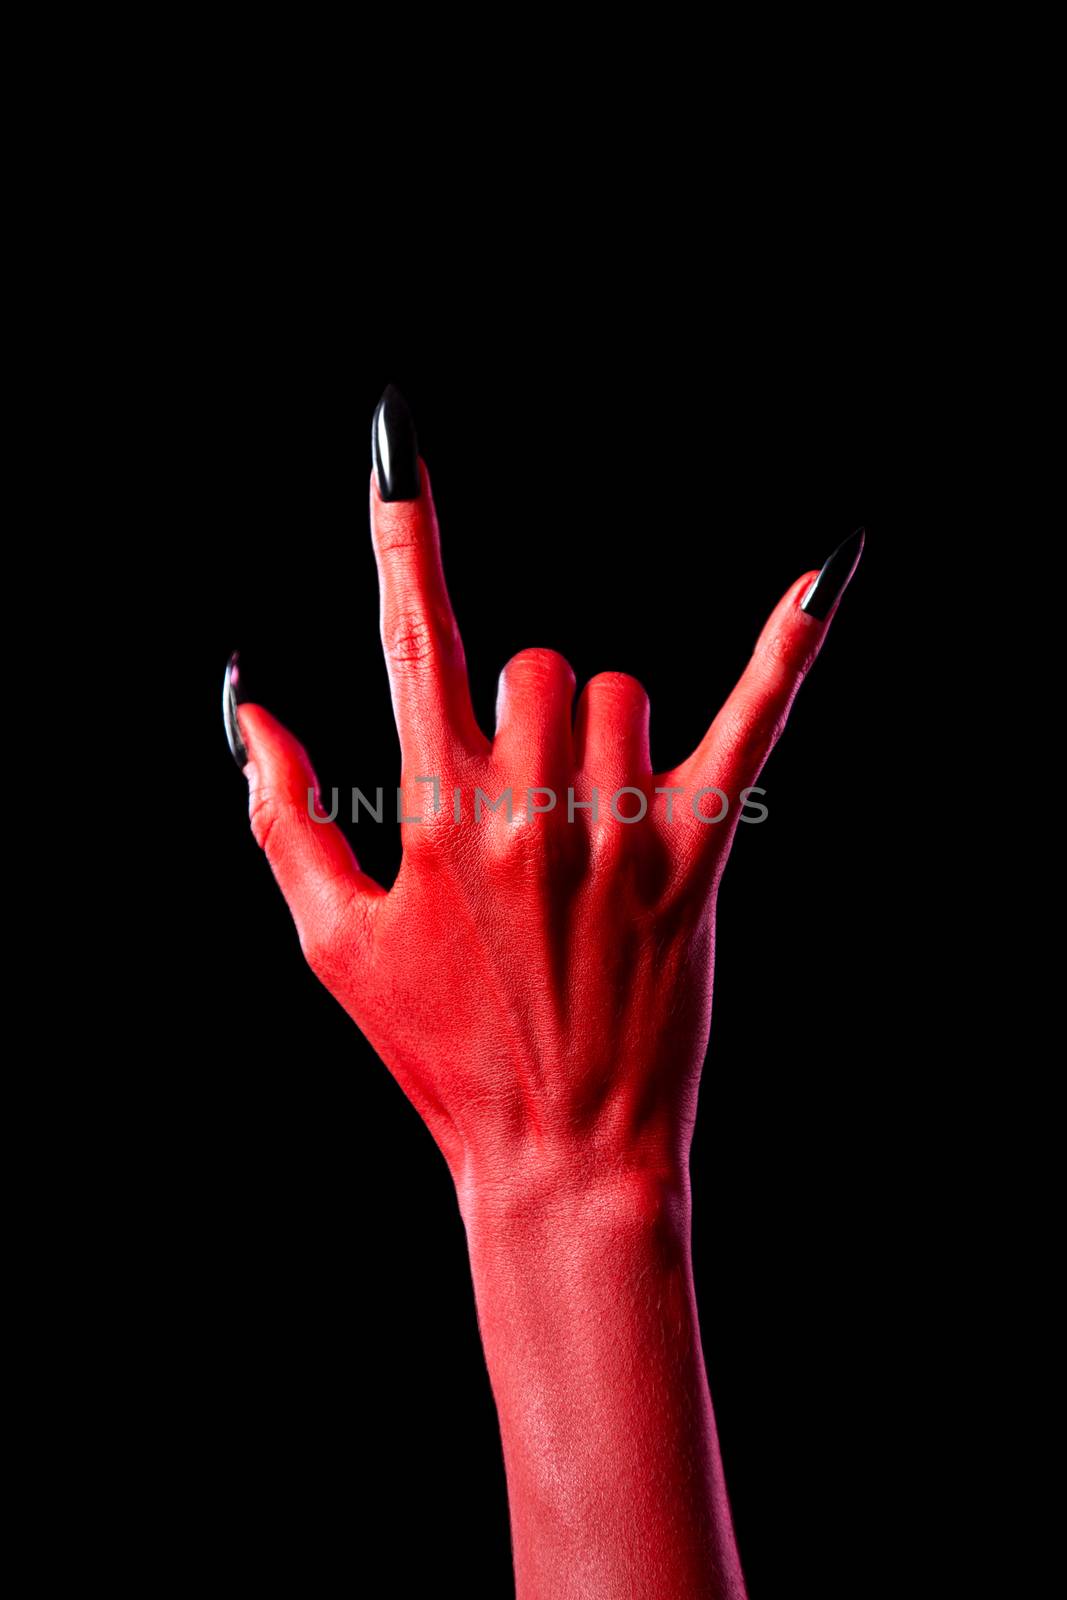 Devil hand showing heavy metal gesture  by Elisanth